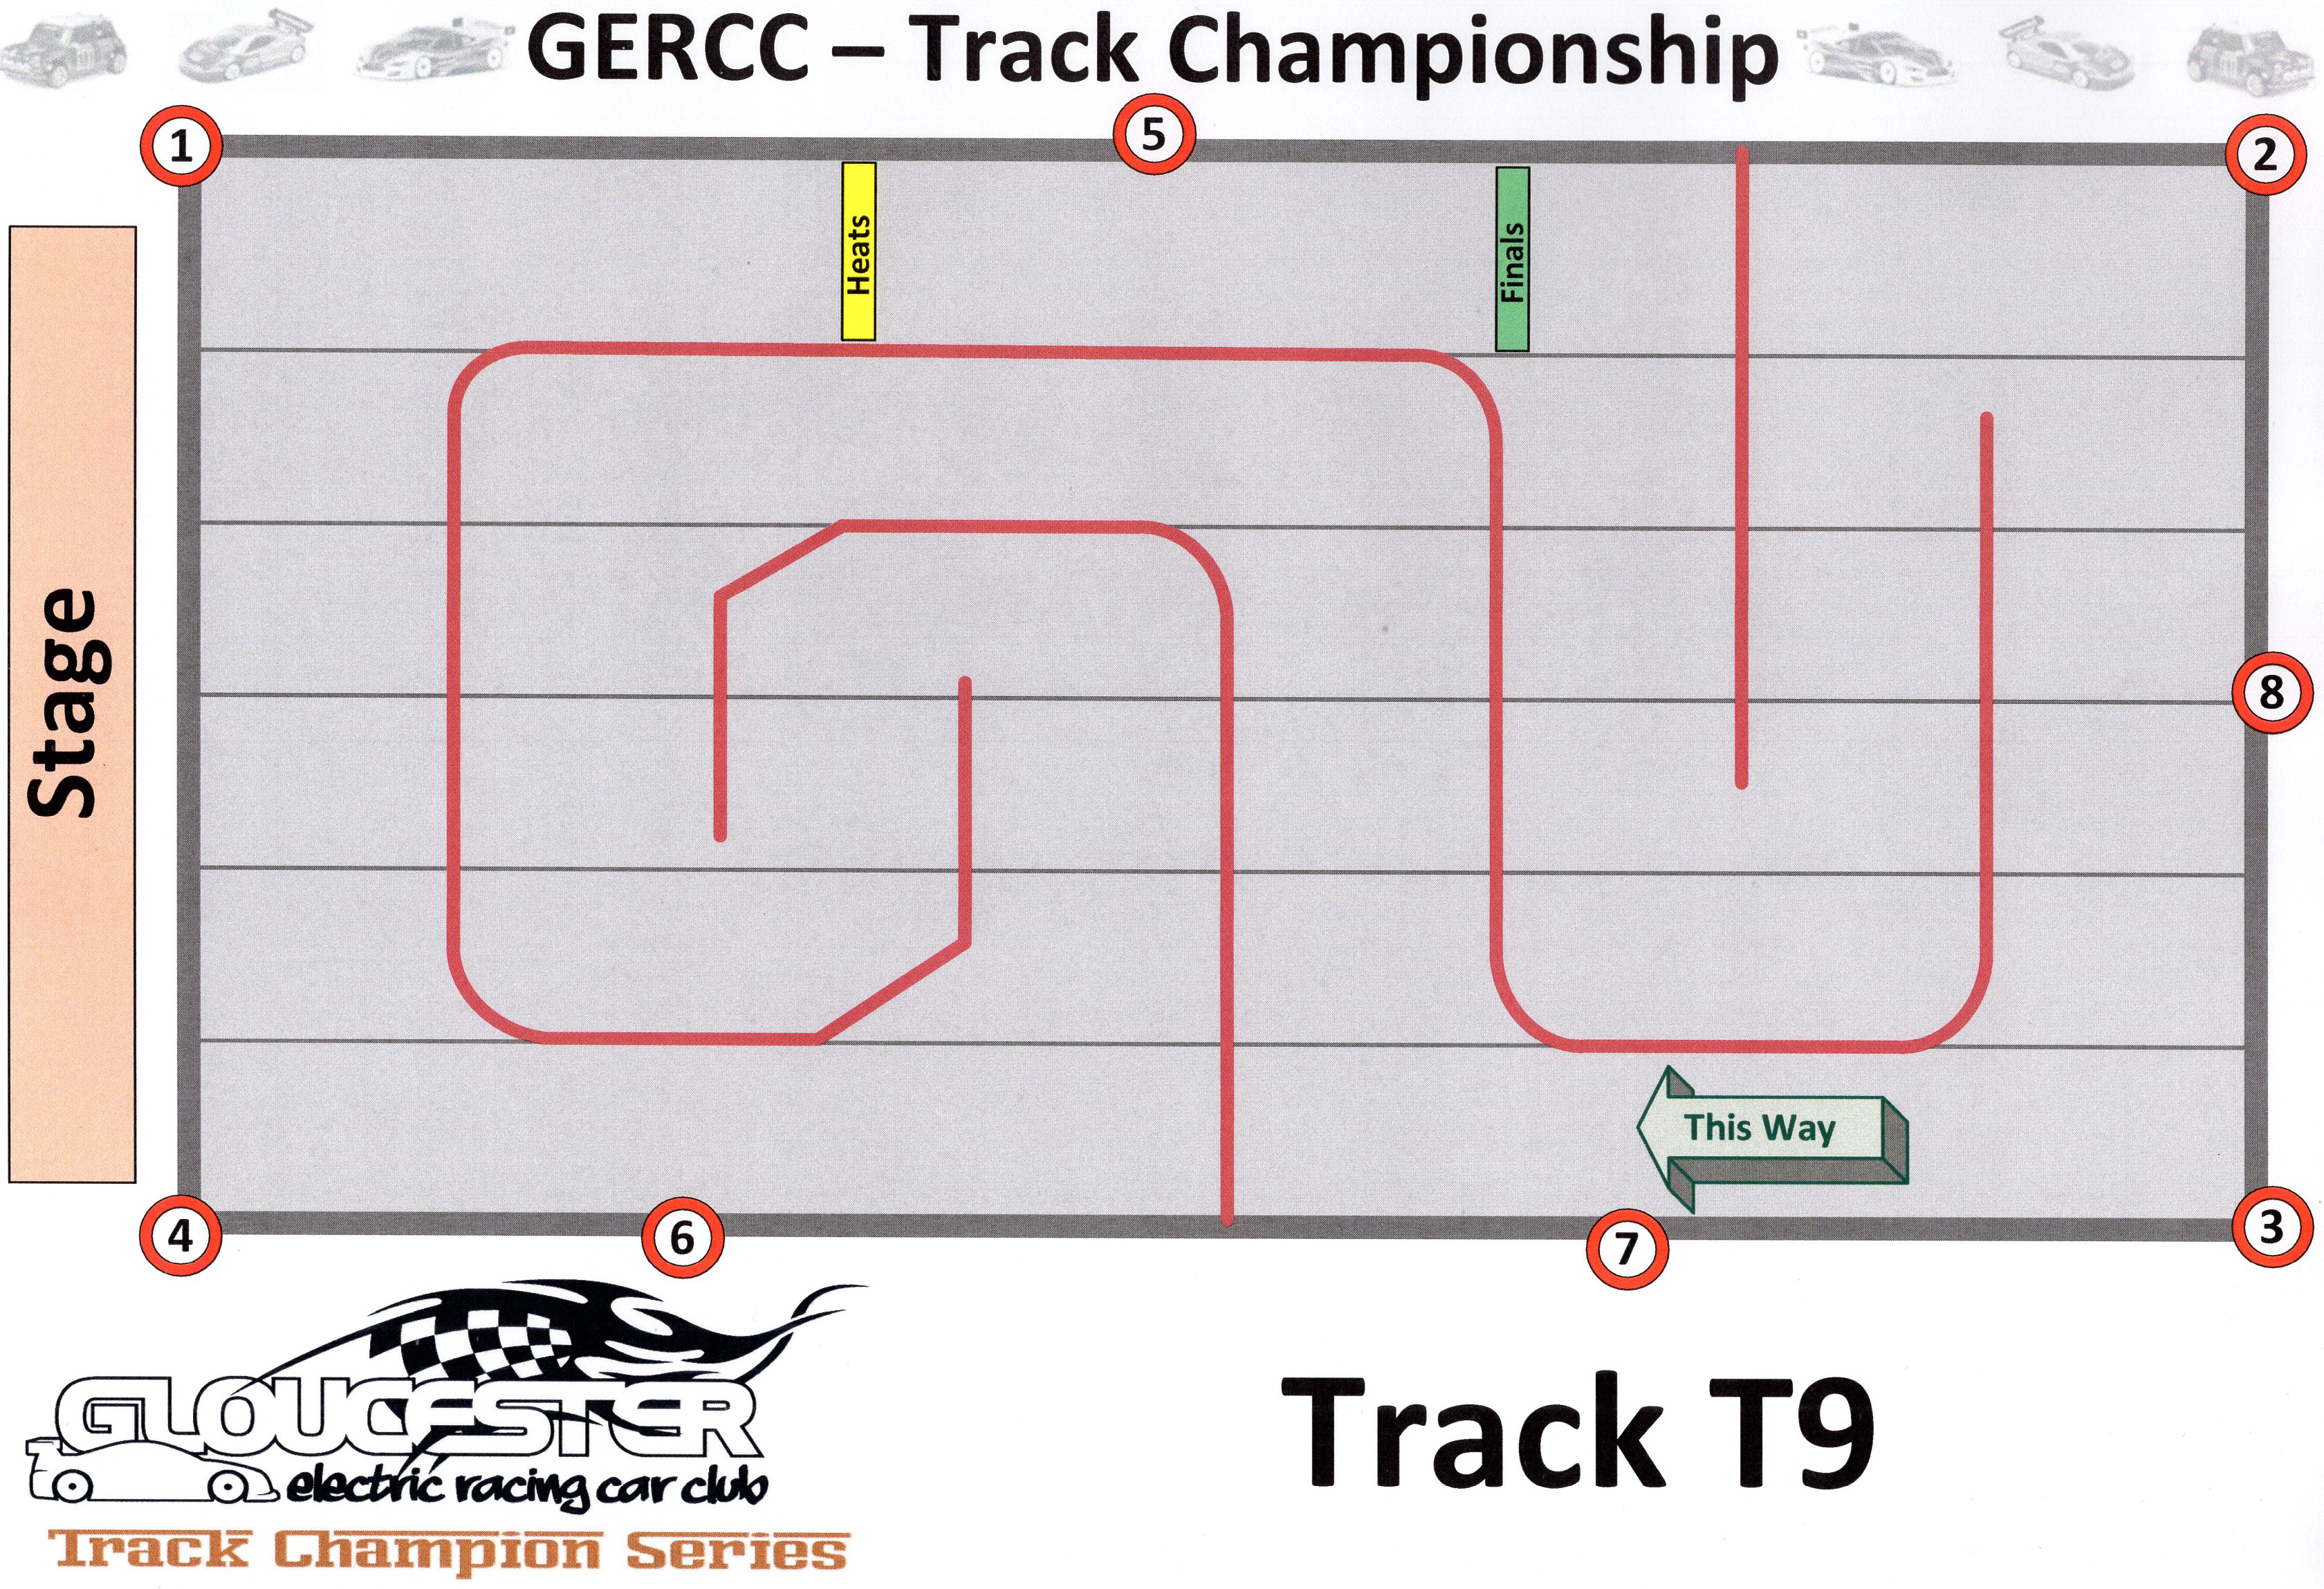 GERCC TCS Track 9